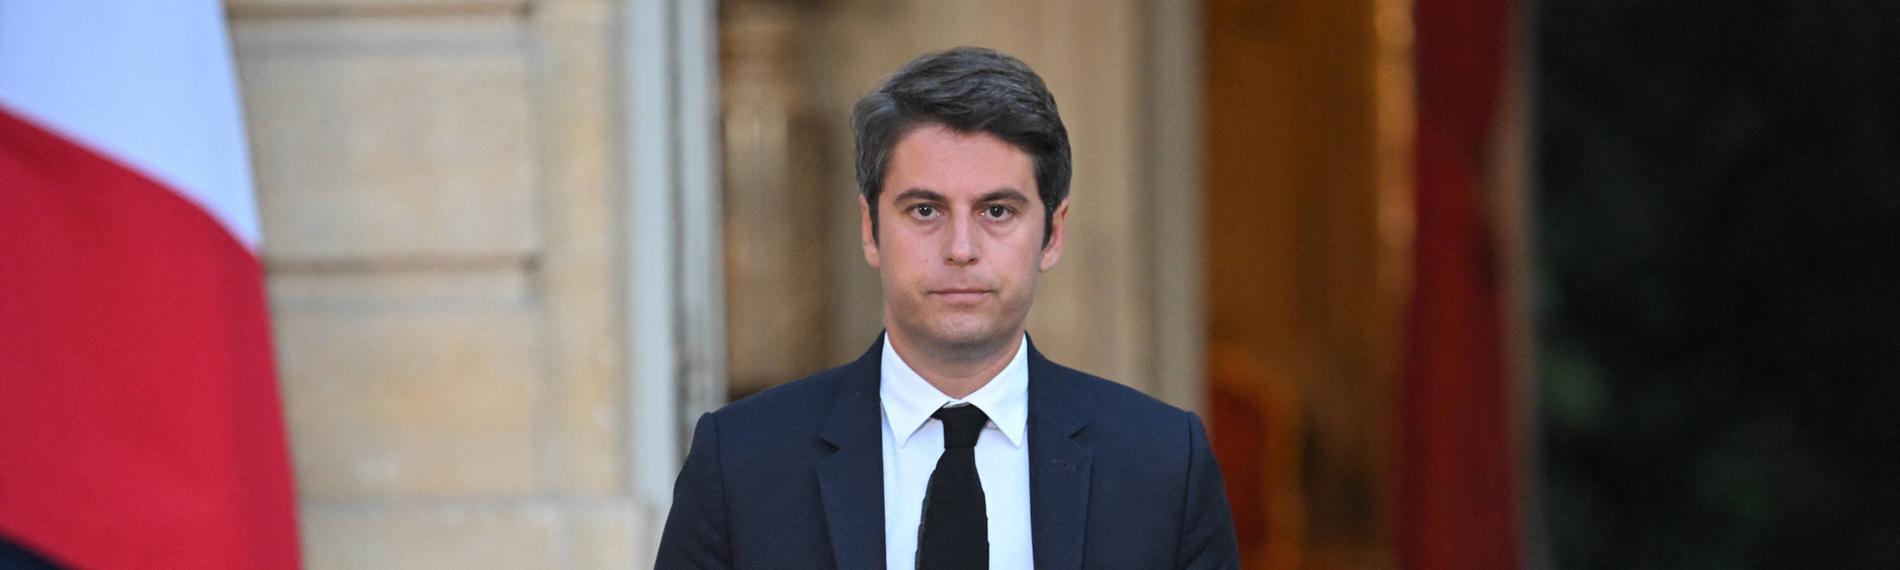 Gabriel Attal, französischer Premierminister 